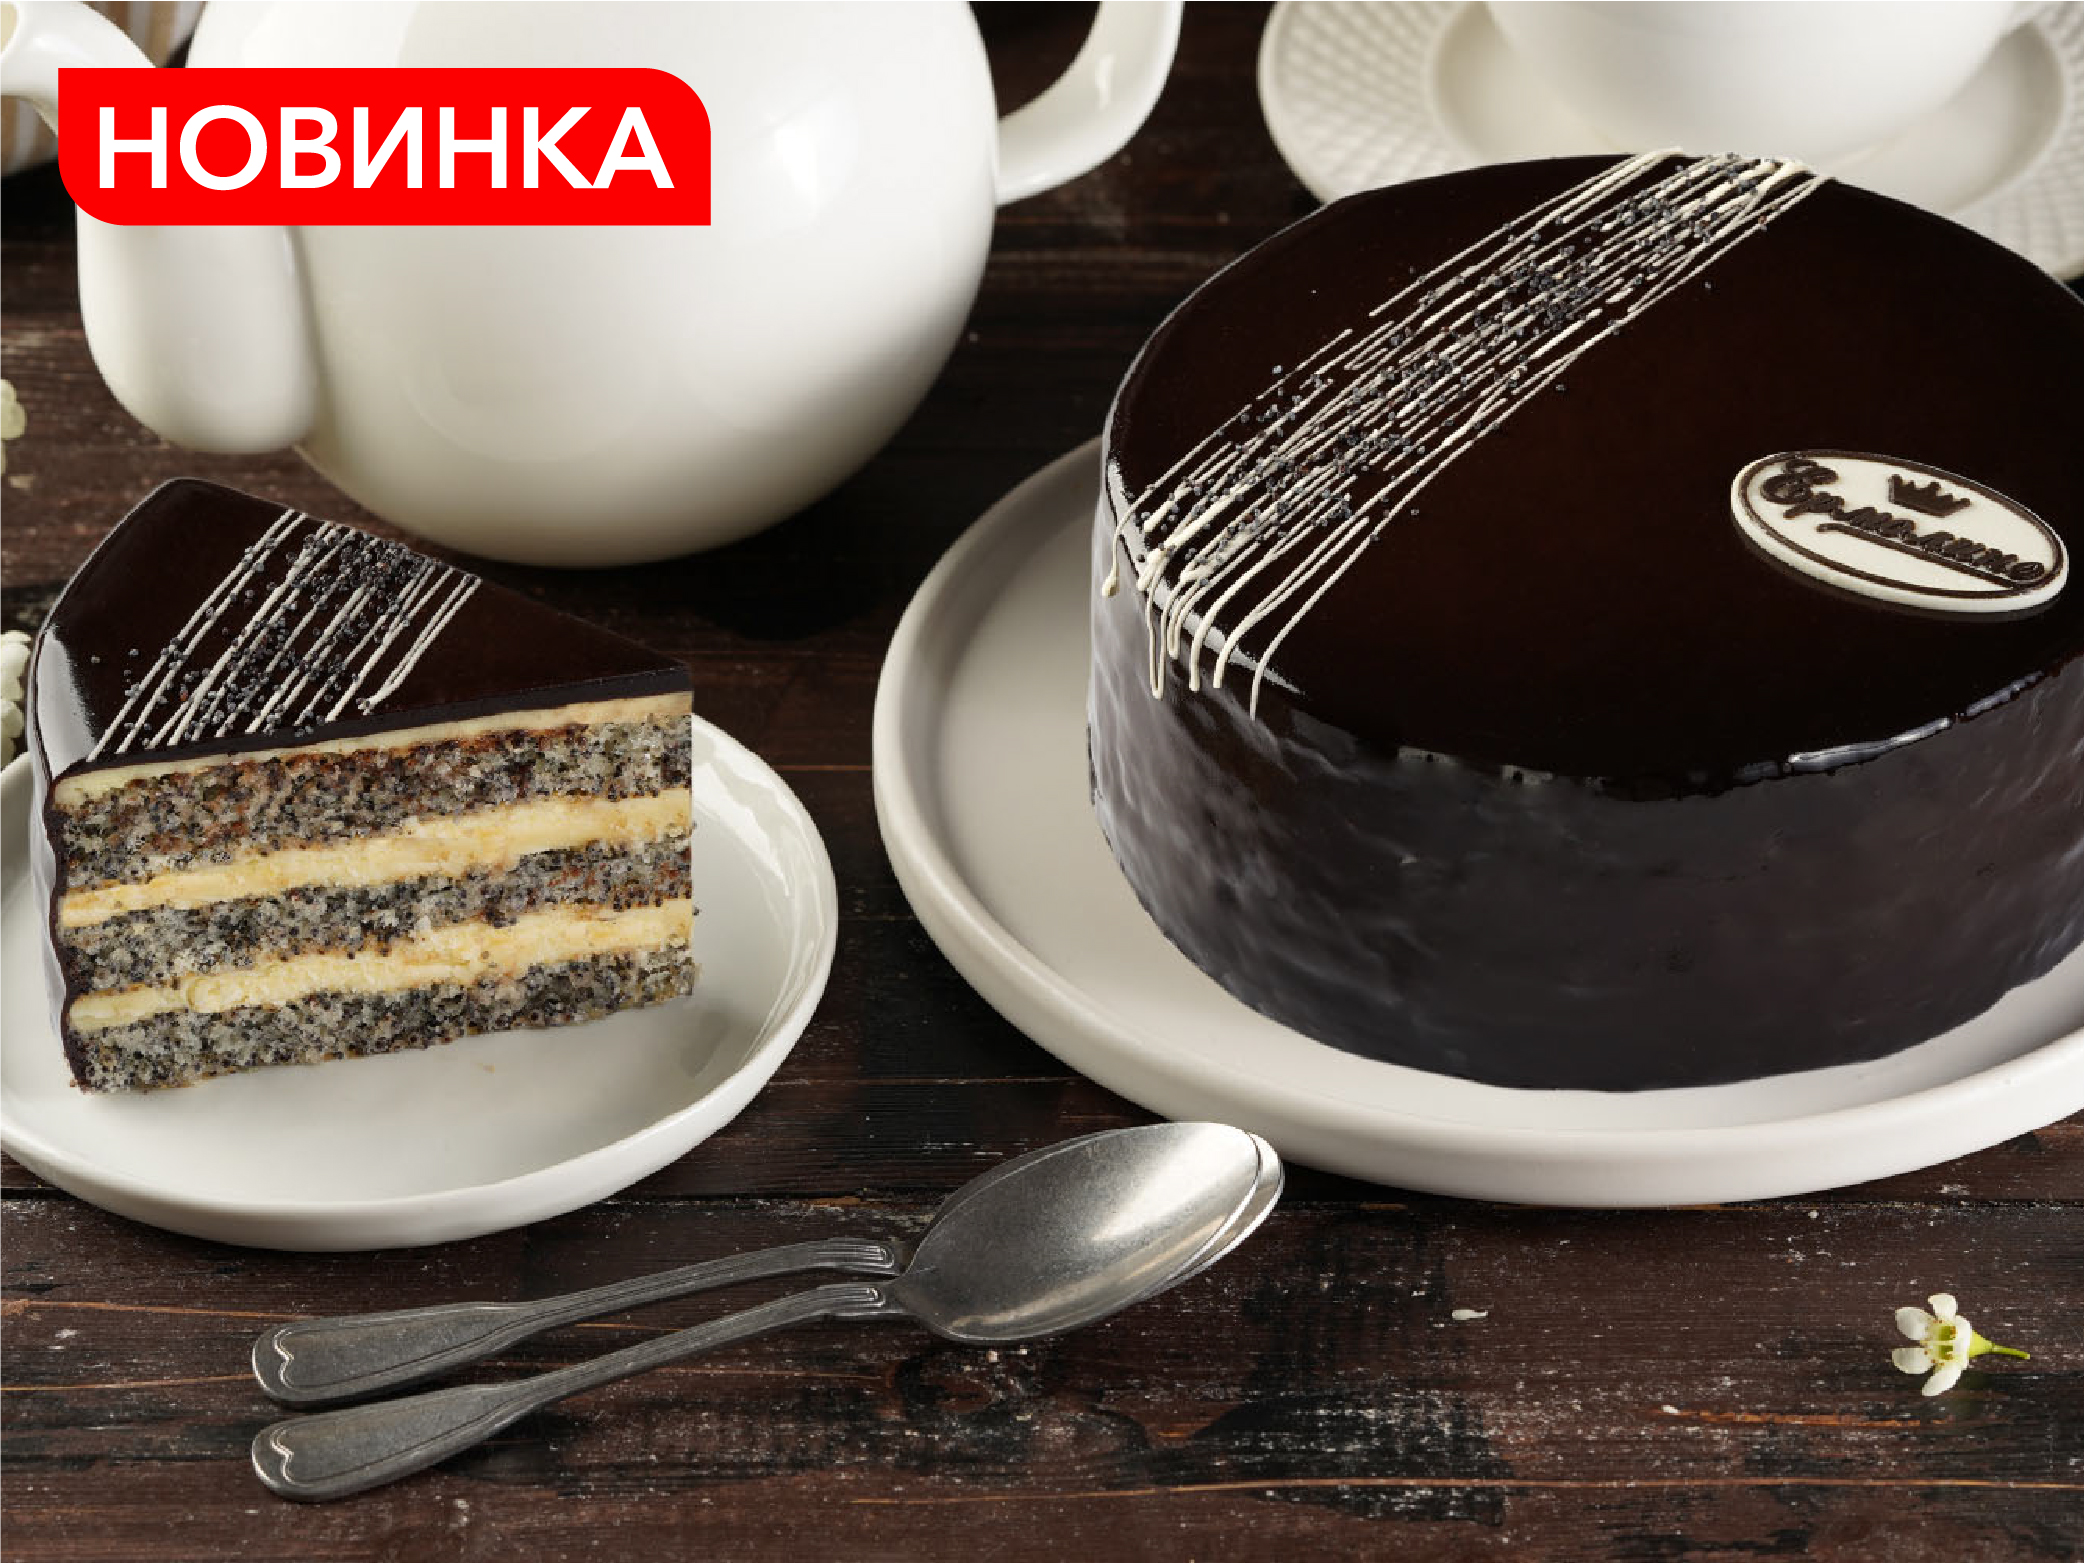 Бисквитный рулет Mamita с шоколадной начинкой вес 150 г. Республика Беларусь